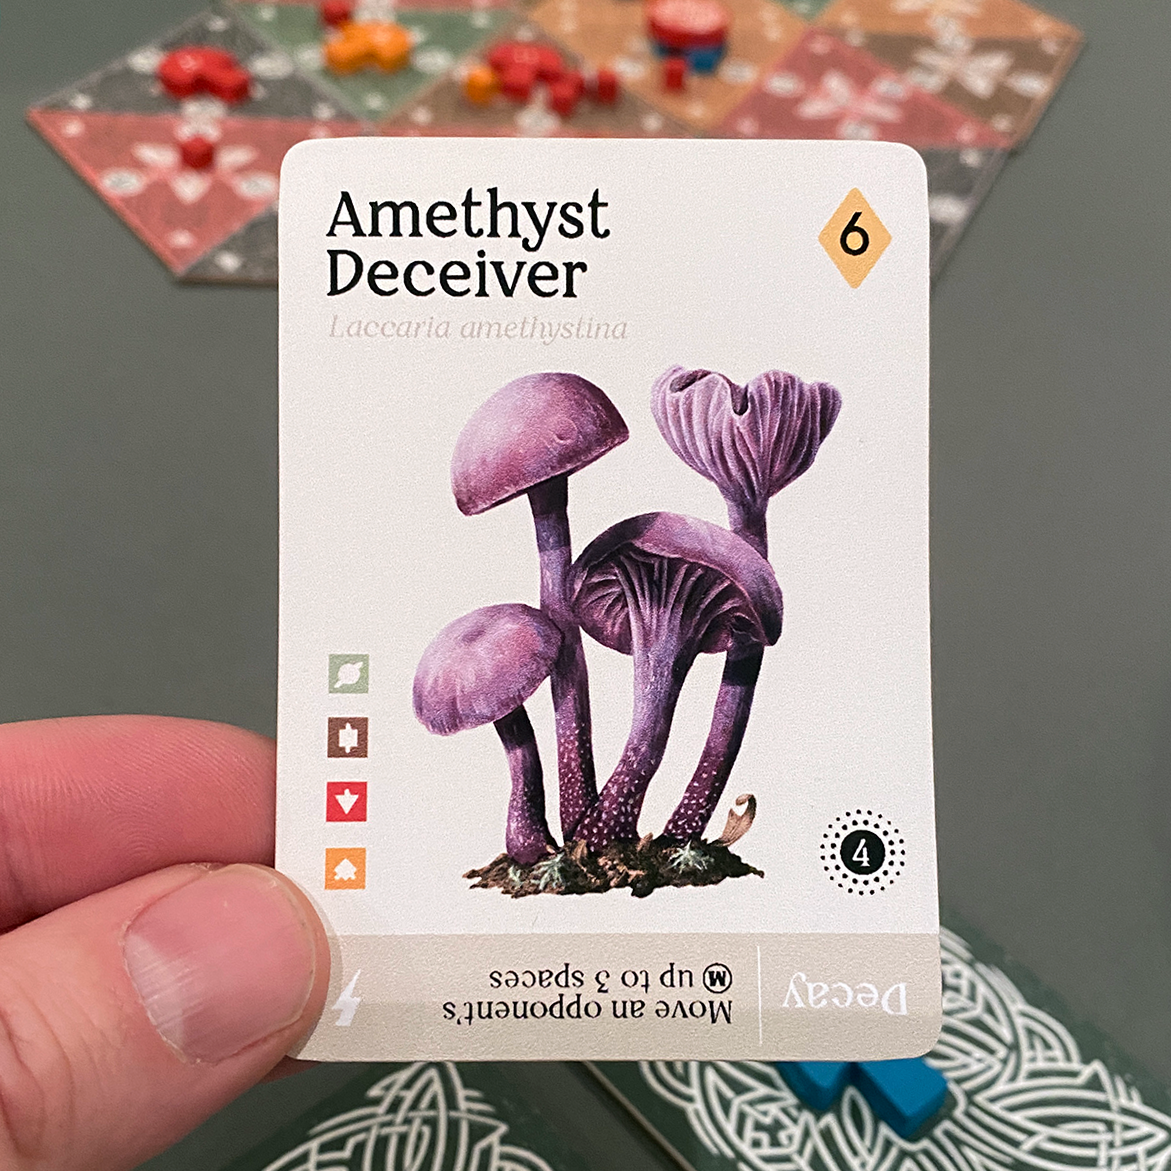 Mycelia Amethyst Deceiver